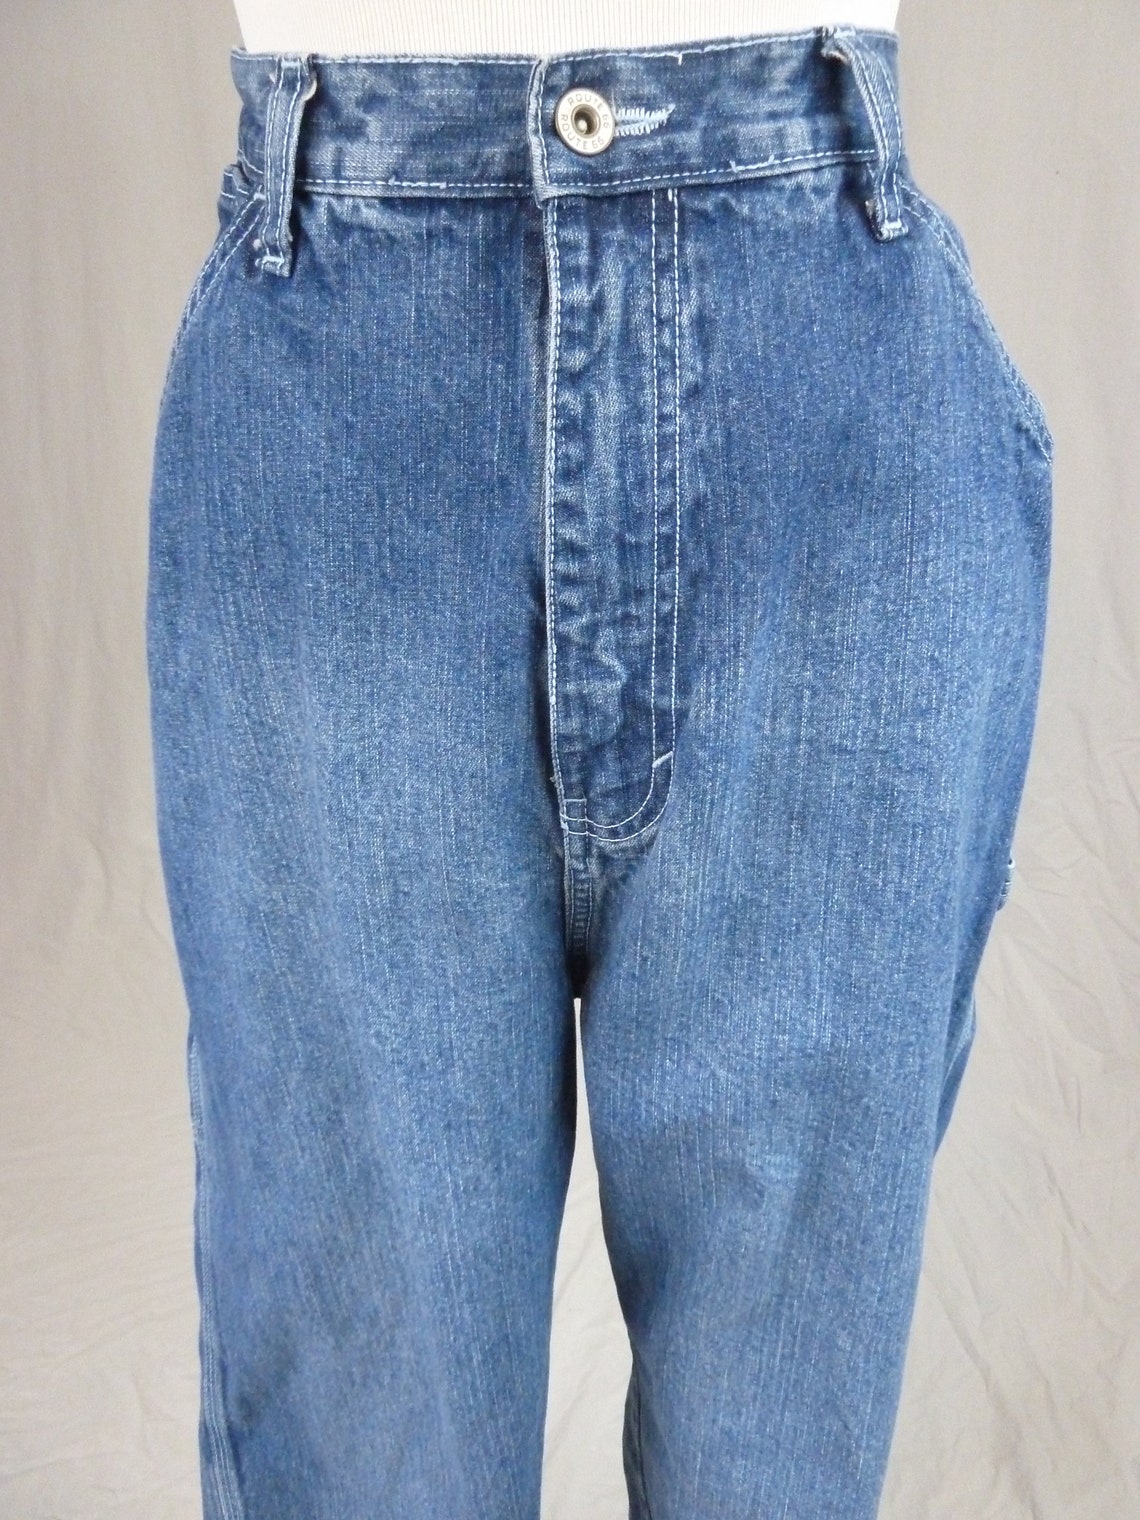 90s Carpenter Jeans 30 waist Blue Wide Leg Denim Pants | Etsy